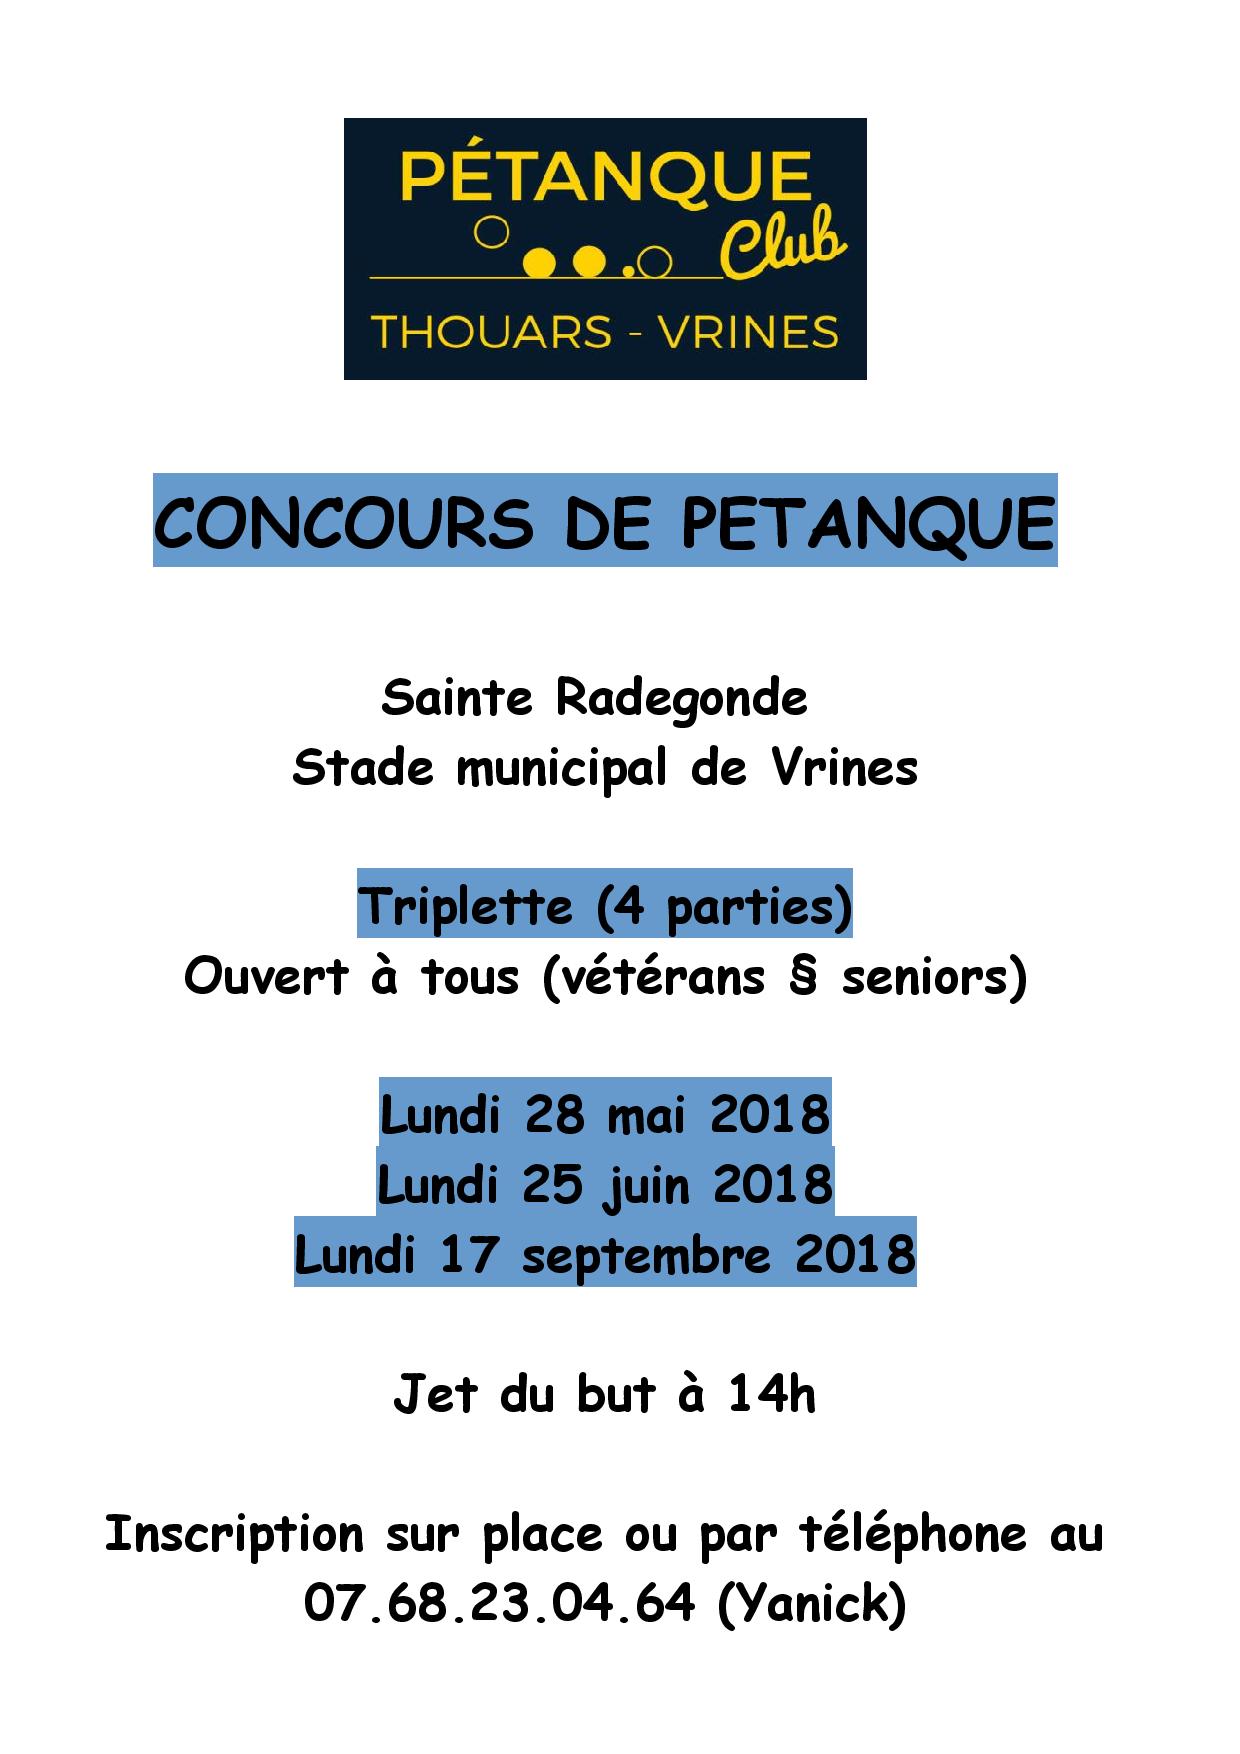 Concours de pétanque triplette ouvert à tous (vétérans § seniors) - Evènement du club de pétanque Pétanque club Thouars vrines